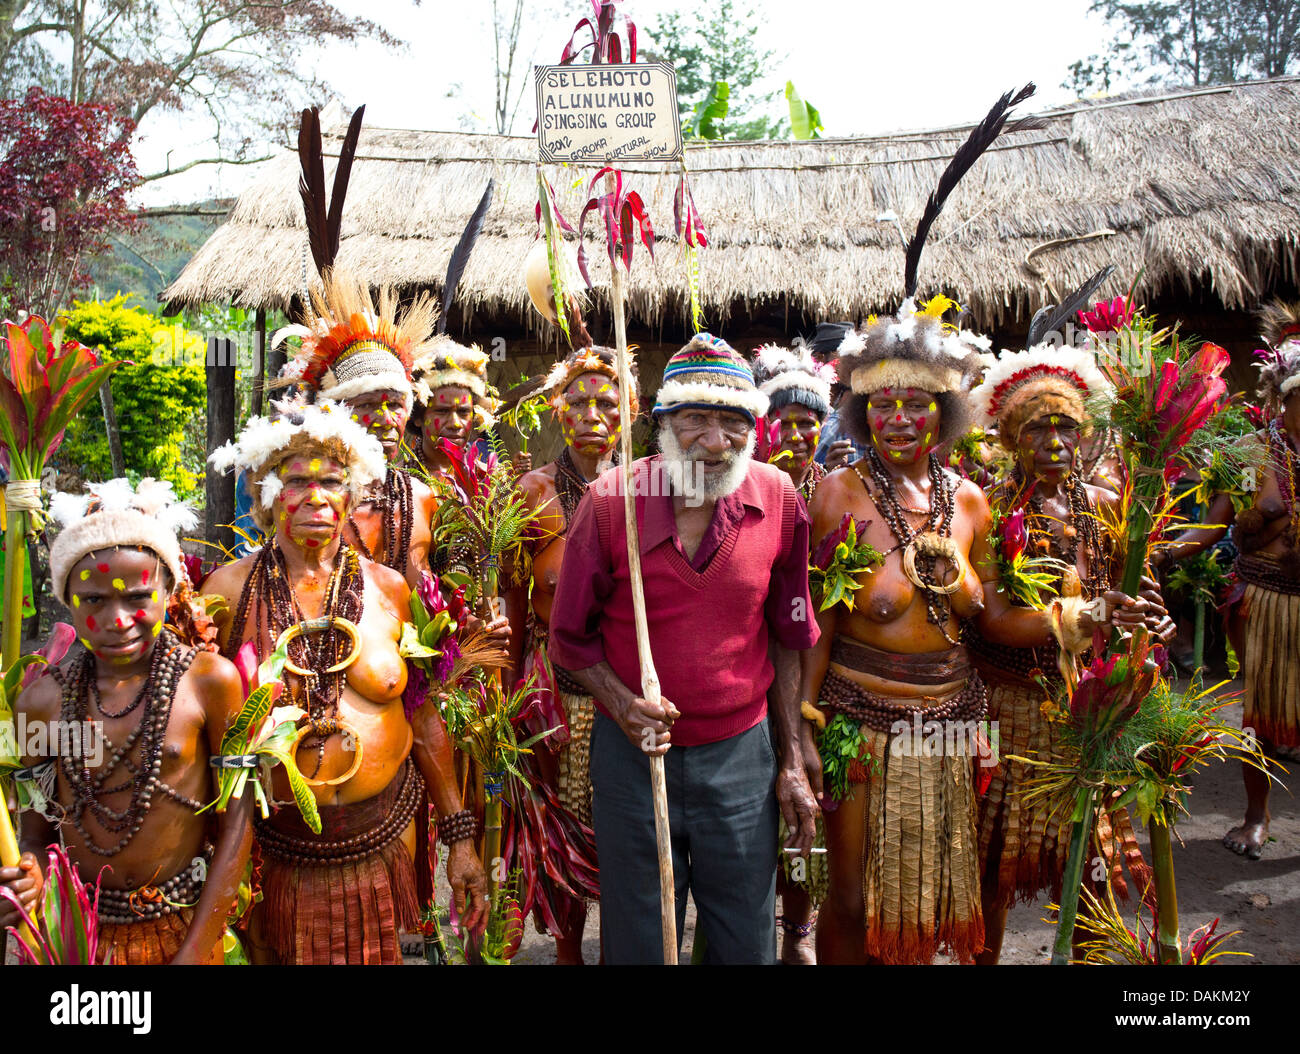 Selehoto Alunumuno Stamm in traditionellen Stammes-Kleid, Hochland von Papua-Neu-Guinea Stockfoto